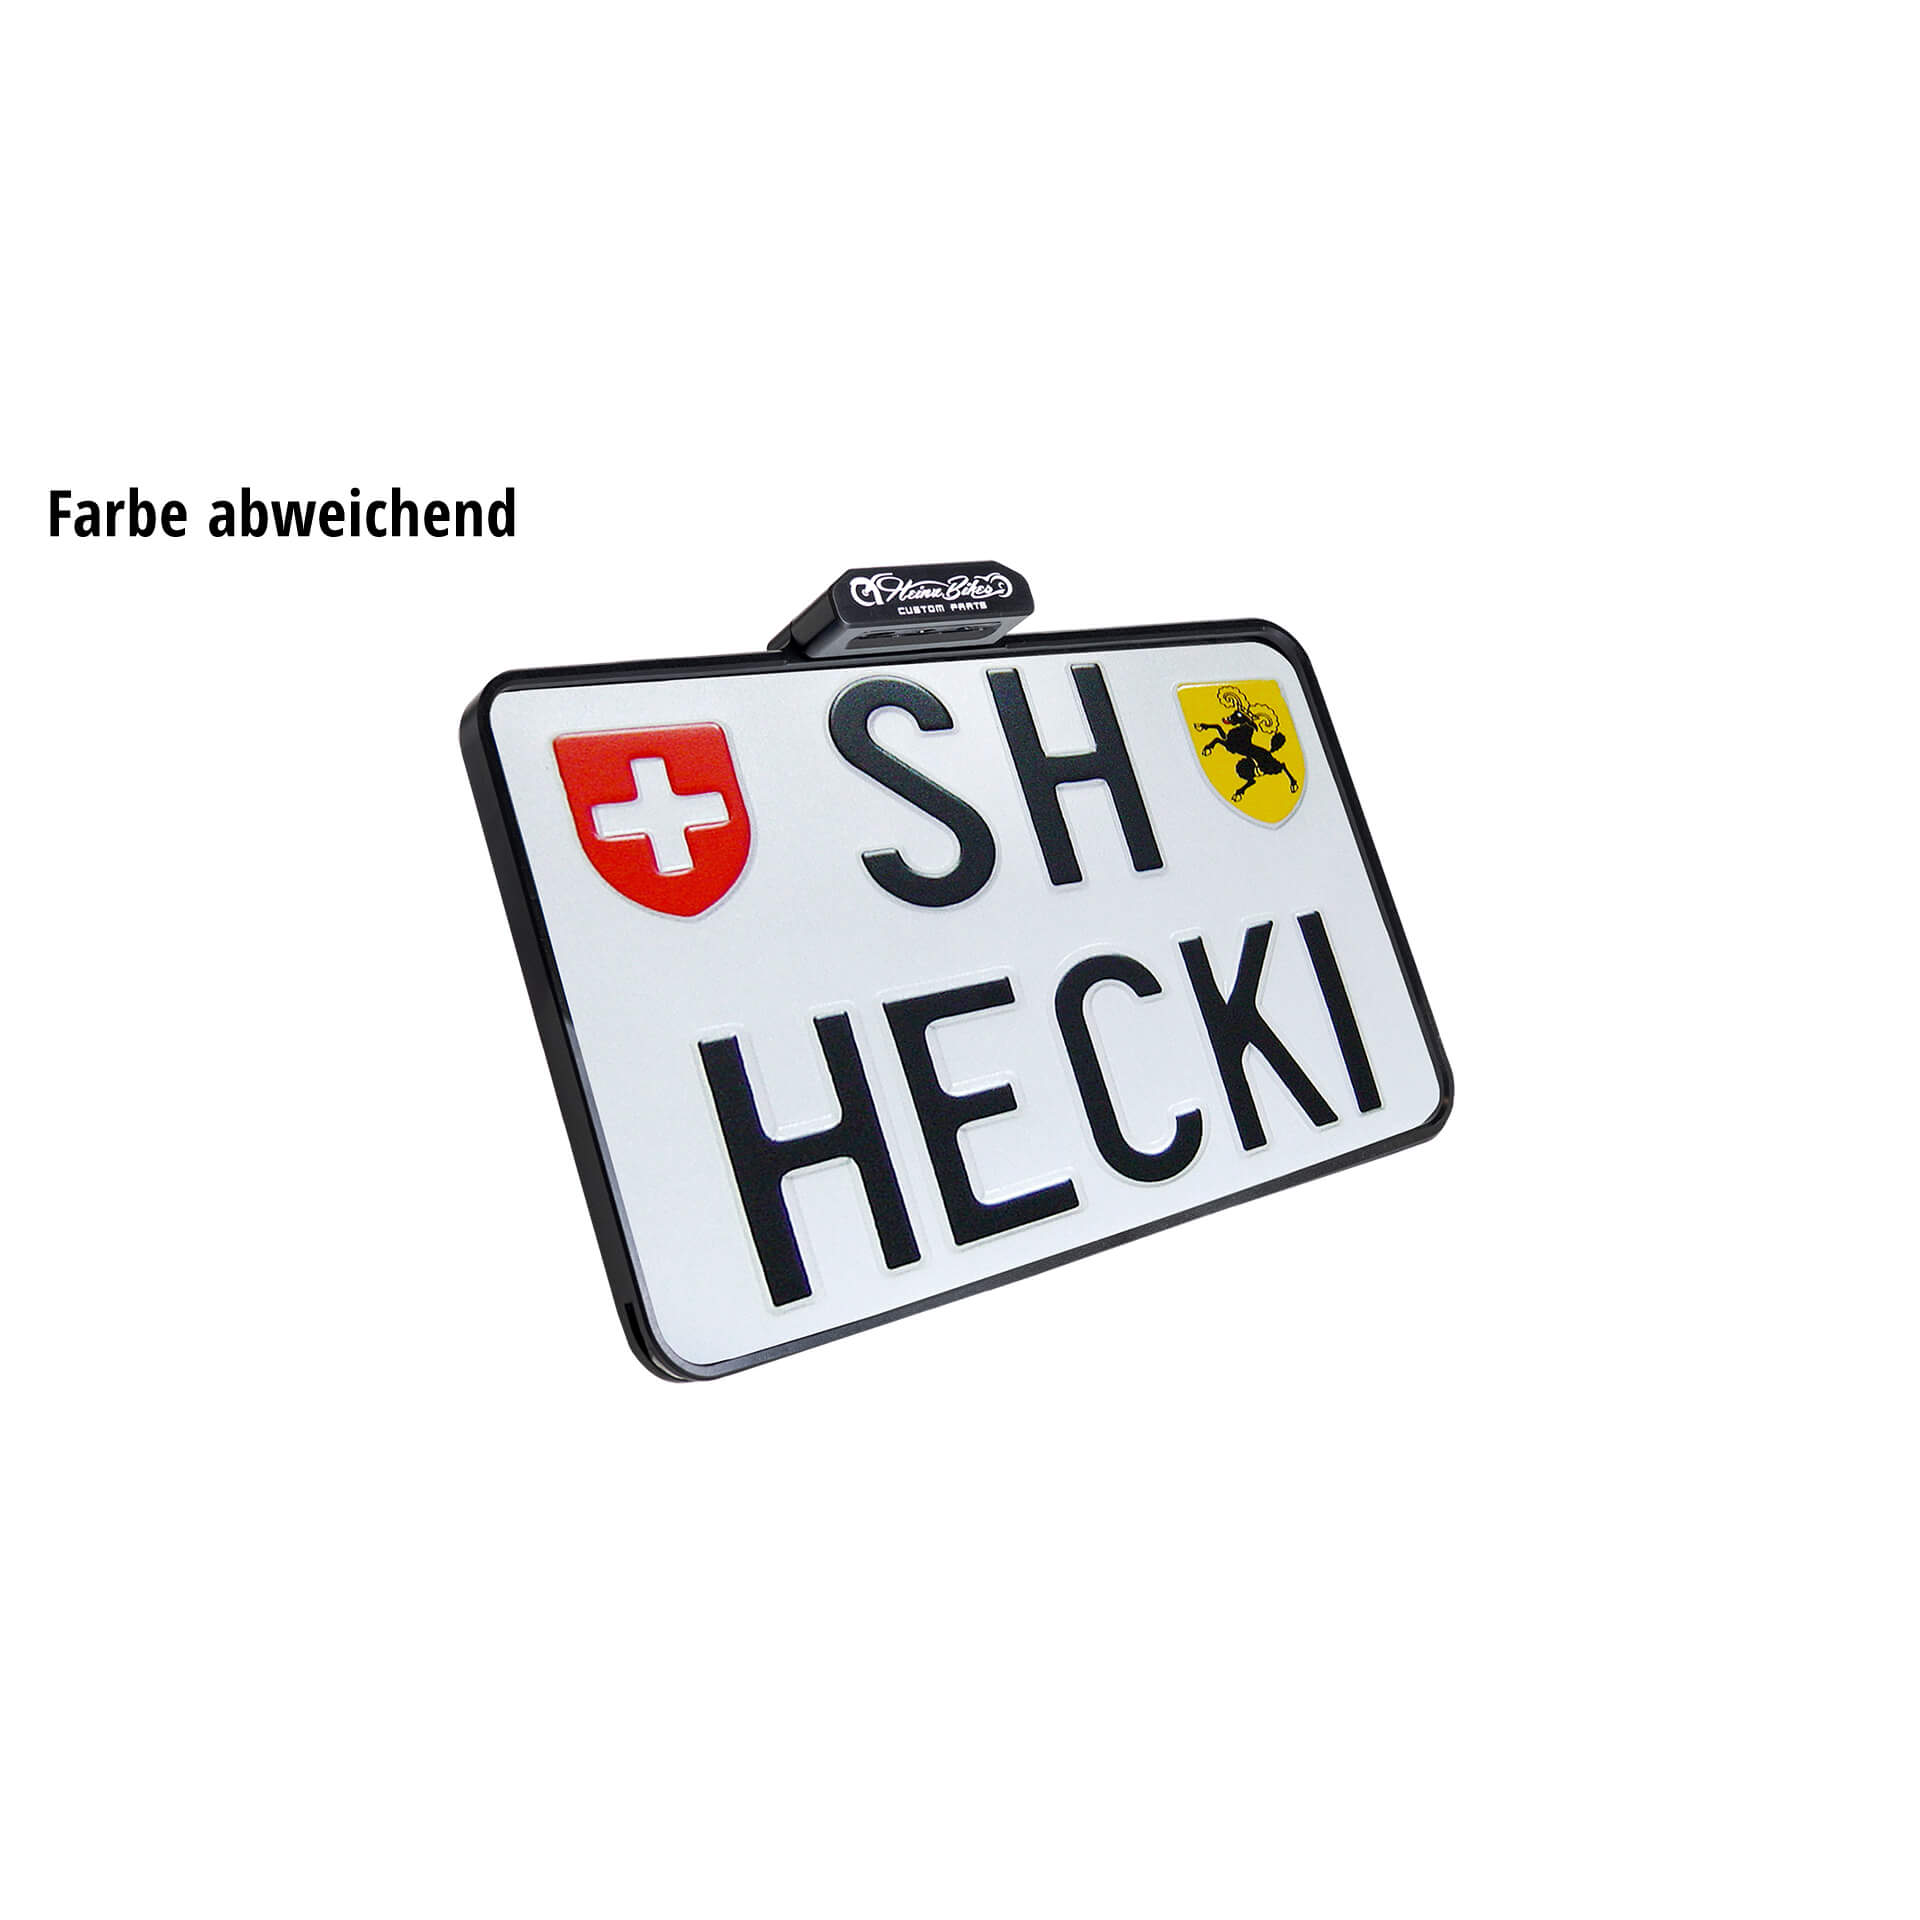 heinzbikes SLIP INN license plate holder incl. license plate illumination, Swiss design